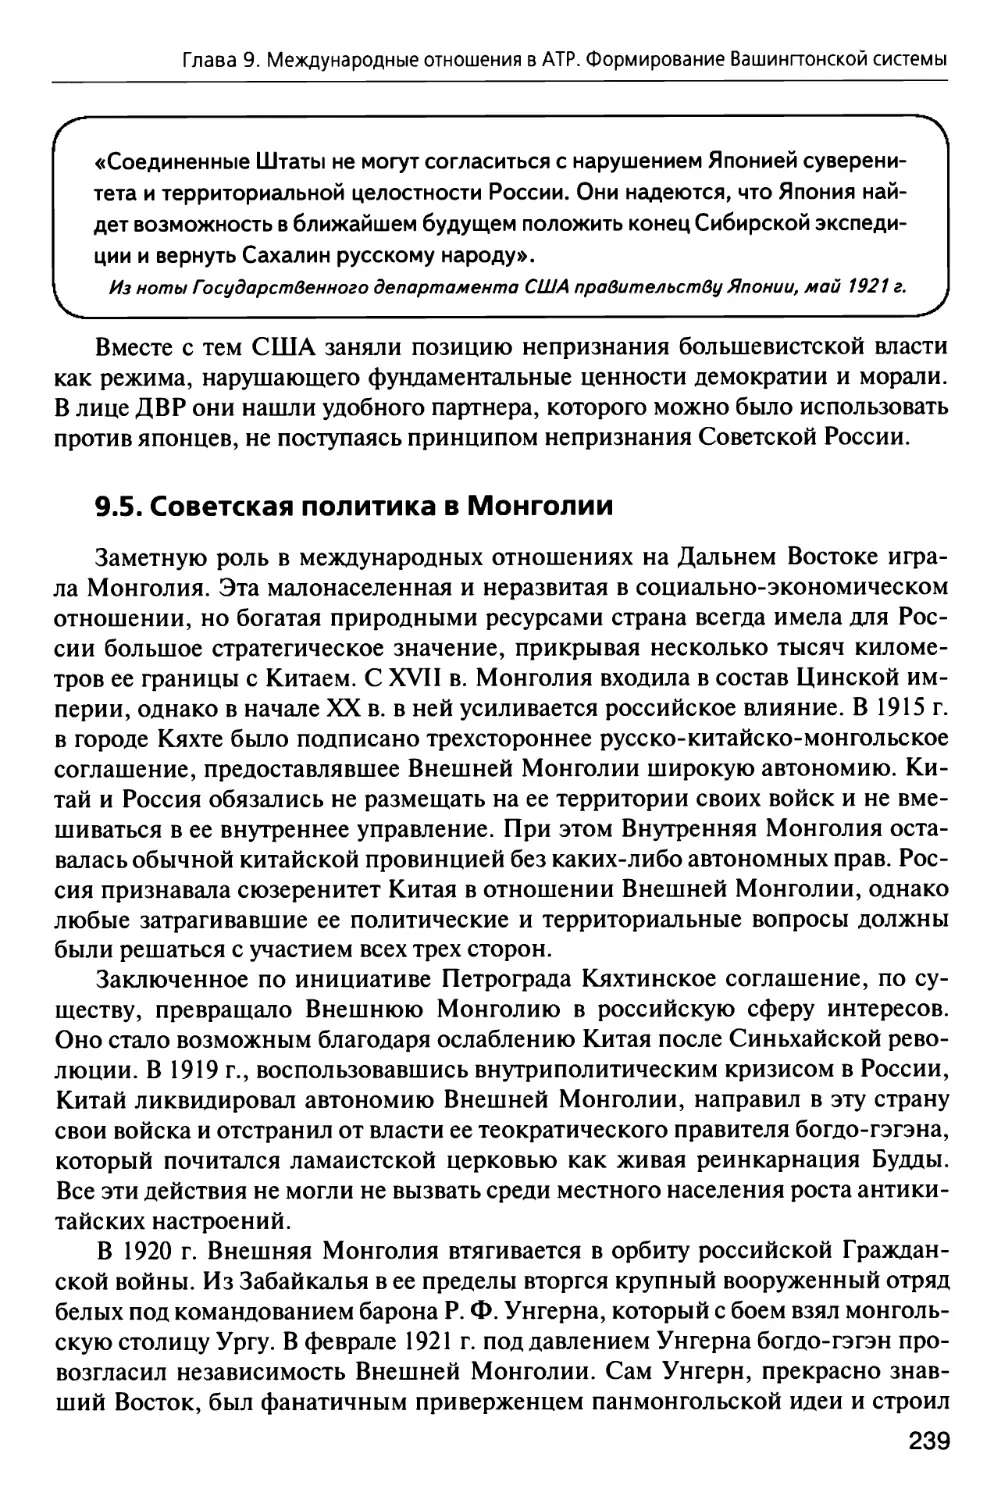 9.5. Советская политика в Монголии